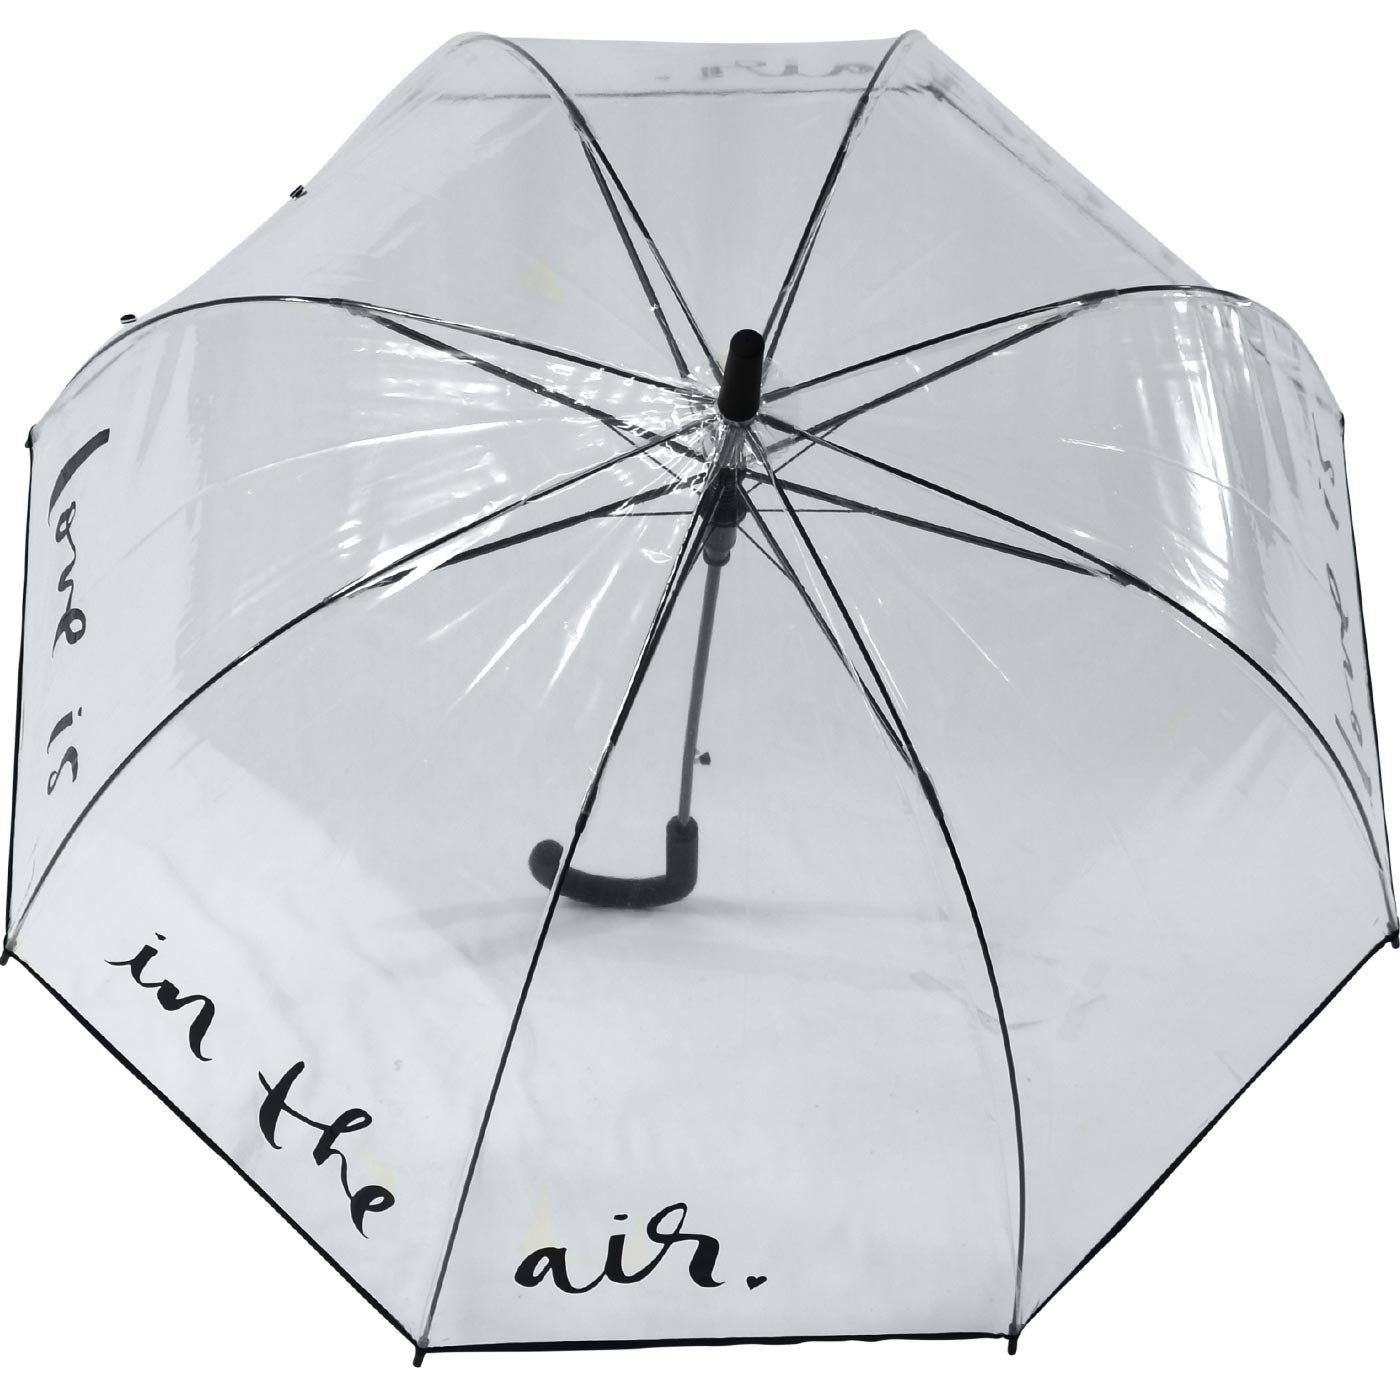 Falconetti® Automatik is in der - Langregenschirm Glockenschirm durchsichtig, Frisur perfekte air", für "love Schutz transparent die the Impliva